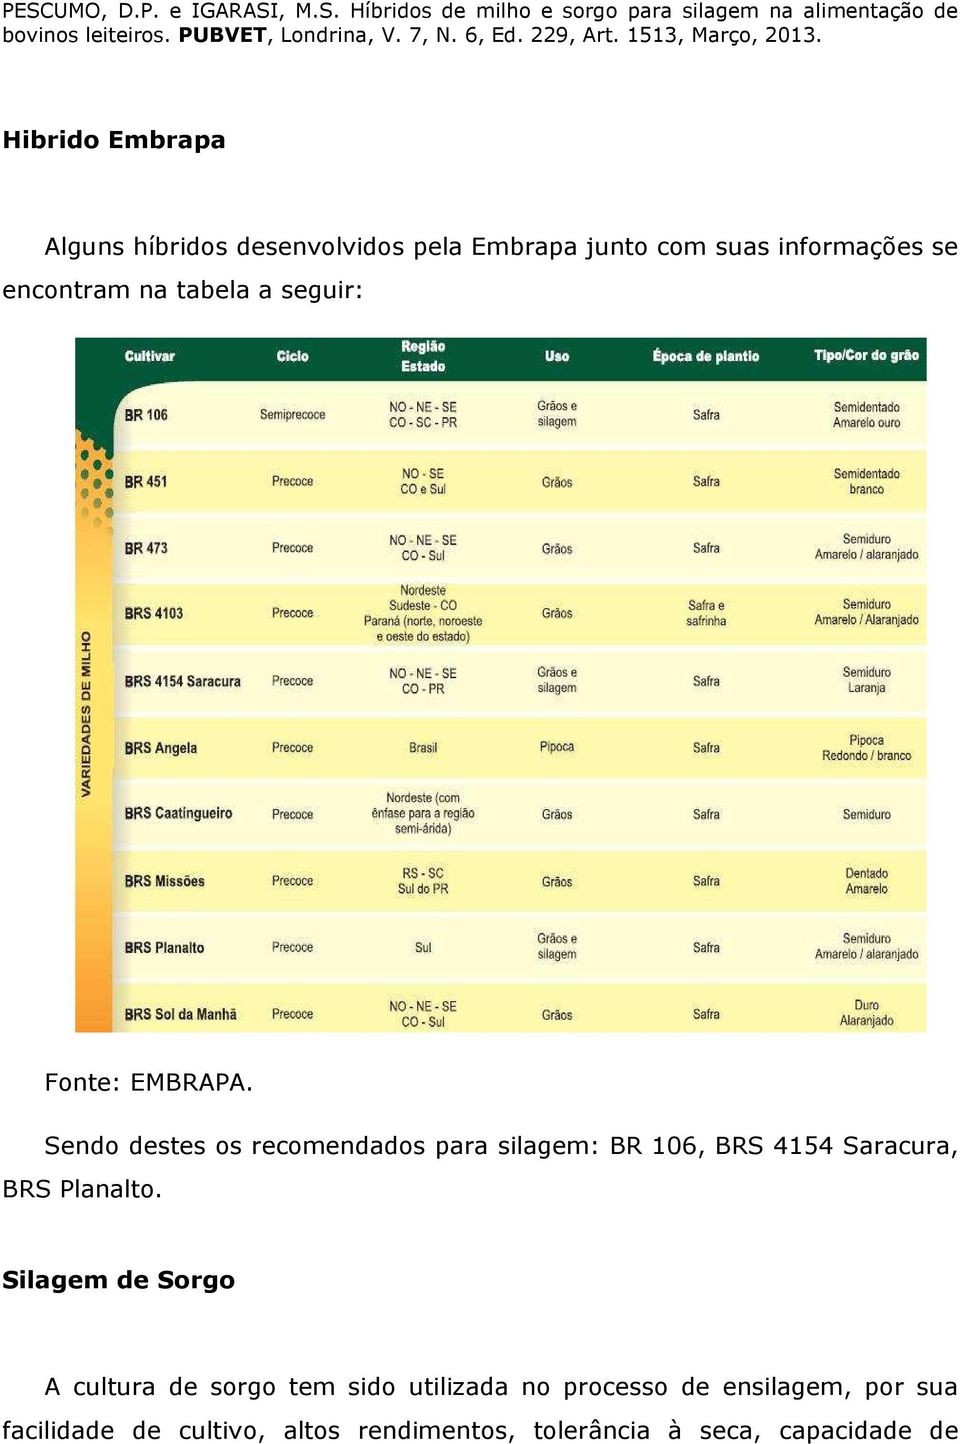 Sendo destes os recomendados para silagem: BR 106, BRS 4154 Saracura, BRS Planalto.